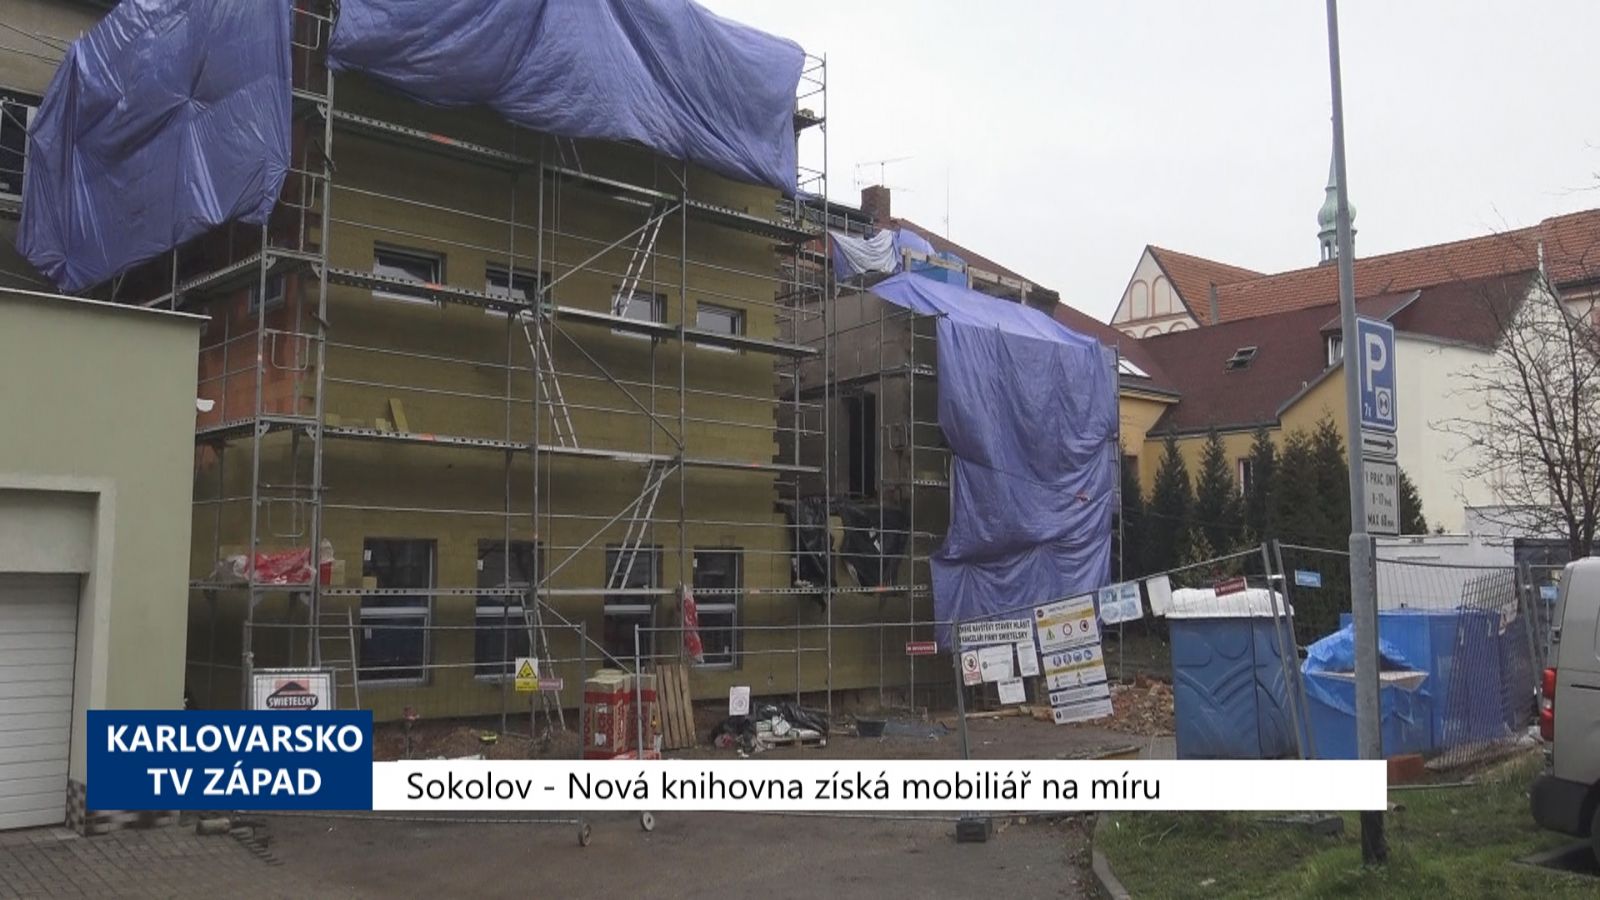 Sokolov: Nová knihovna získá mobiliář na míru (TV Západ)